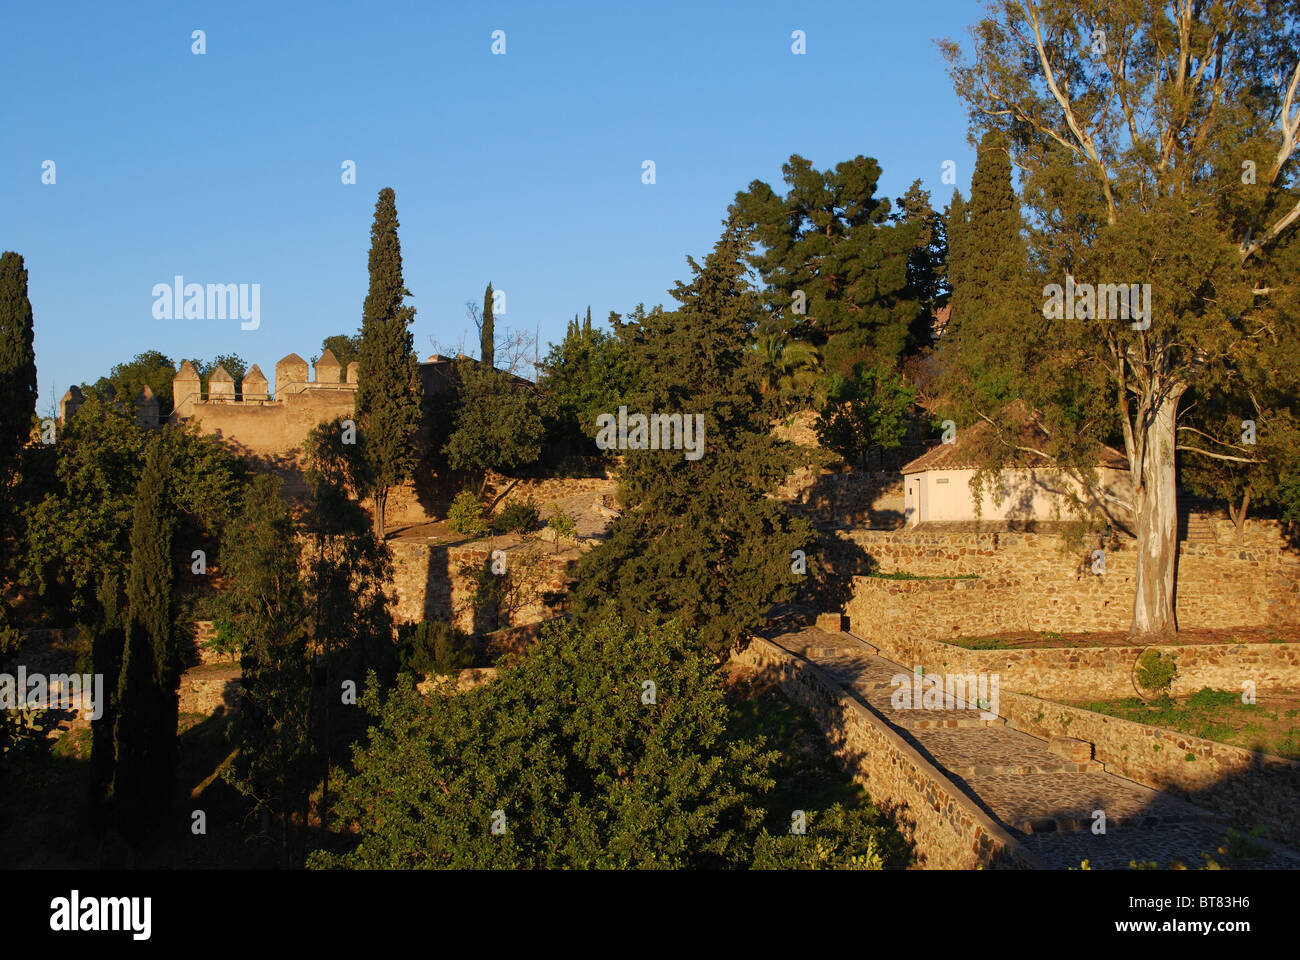 Merli del castello e giardini, castello di Gibralfaro, Malaga, Costa del Sol, provincia di Malaga, Andalusia, Spagna, Europa occidentale. Foto Stock